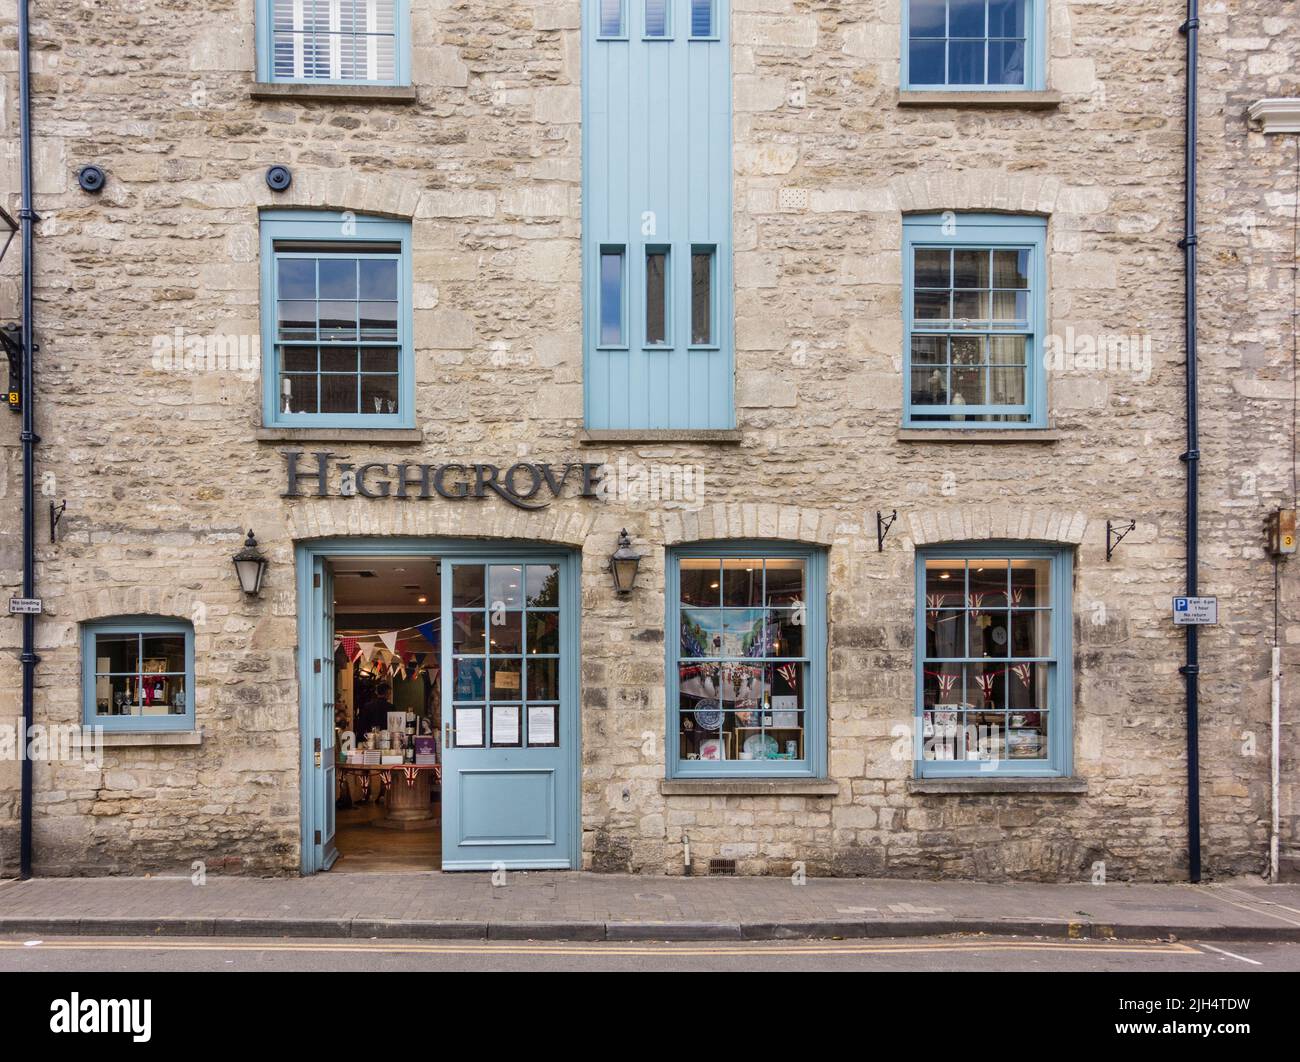 Highgrove Shop, Tetbury, Gloucestershire, UK Stock Photo